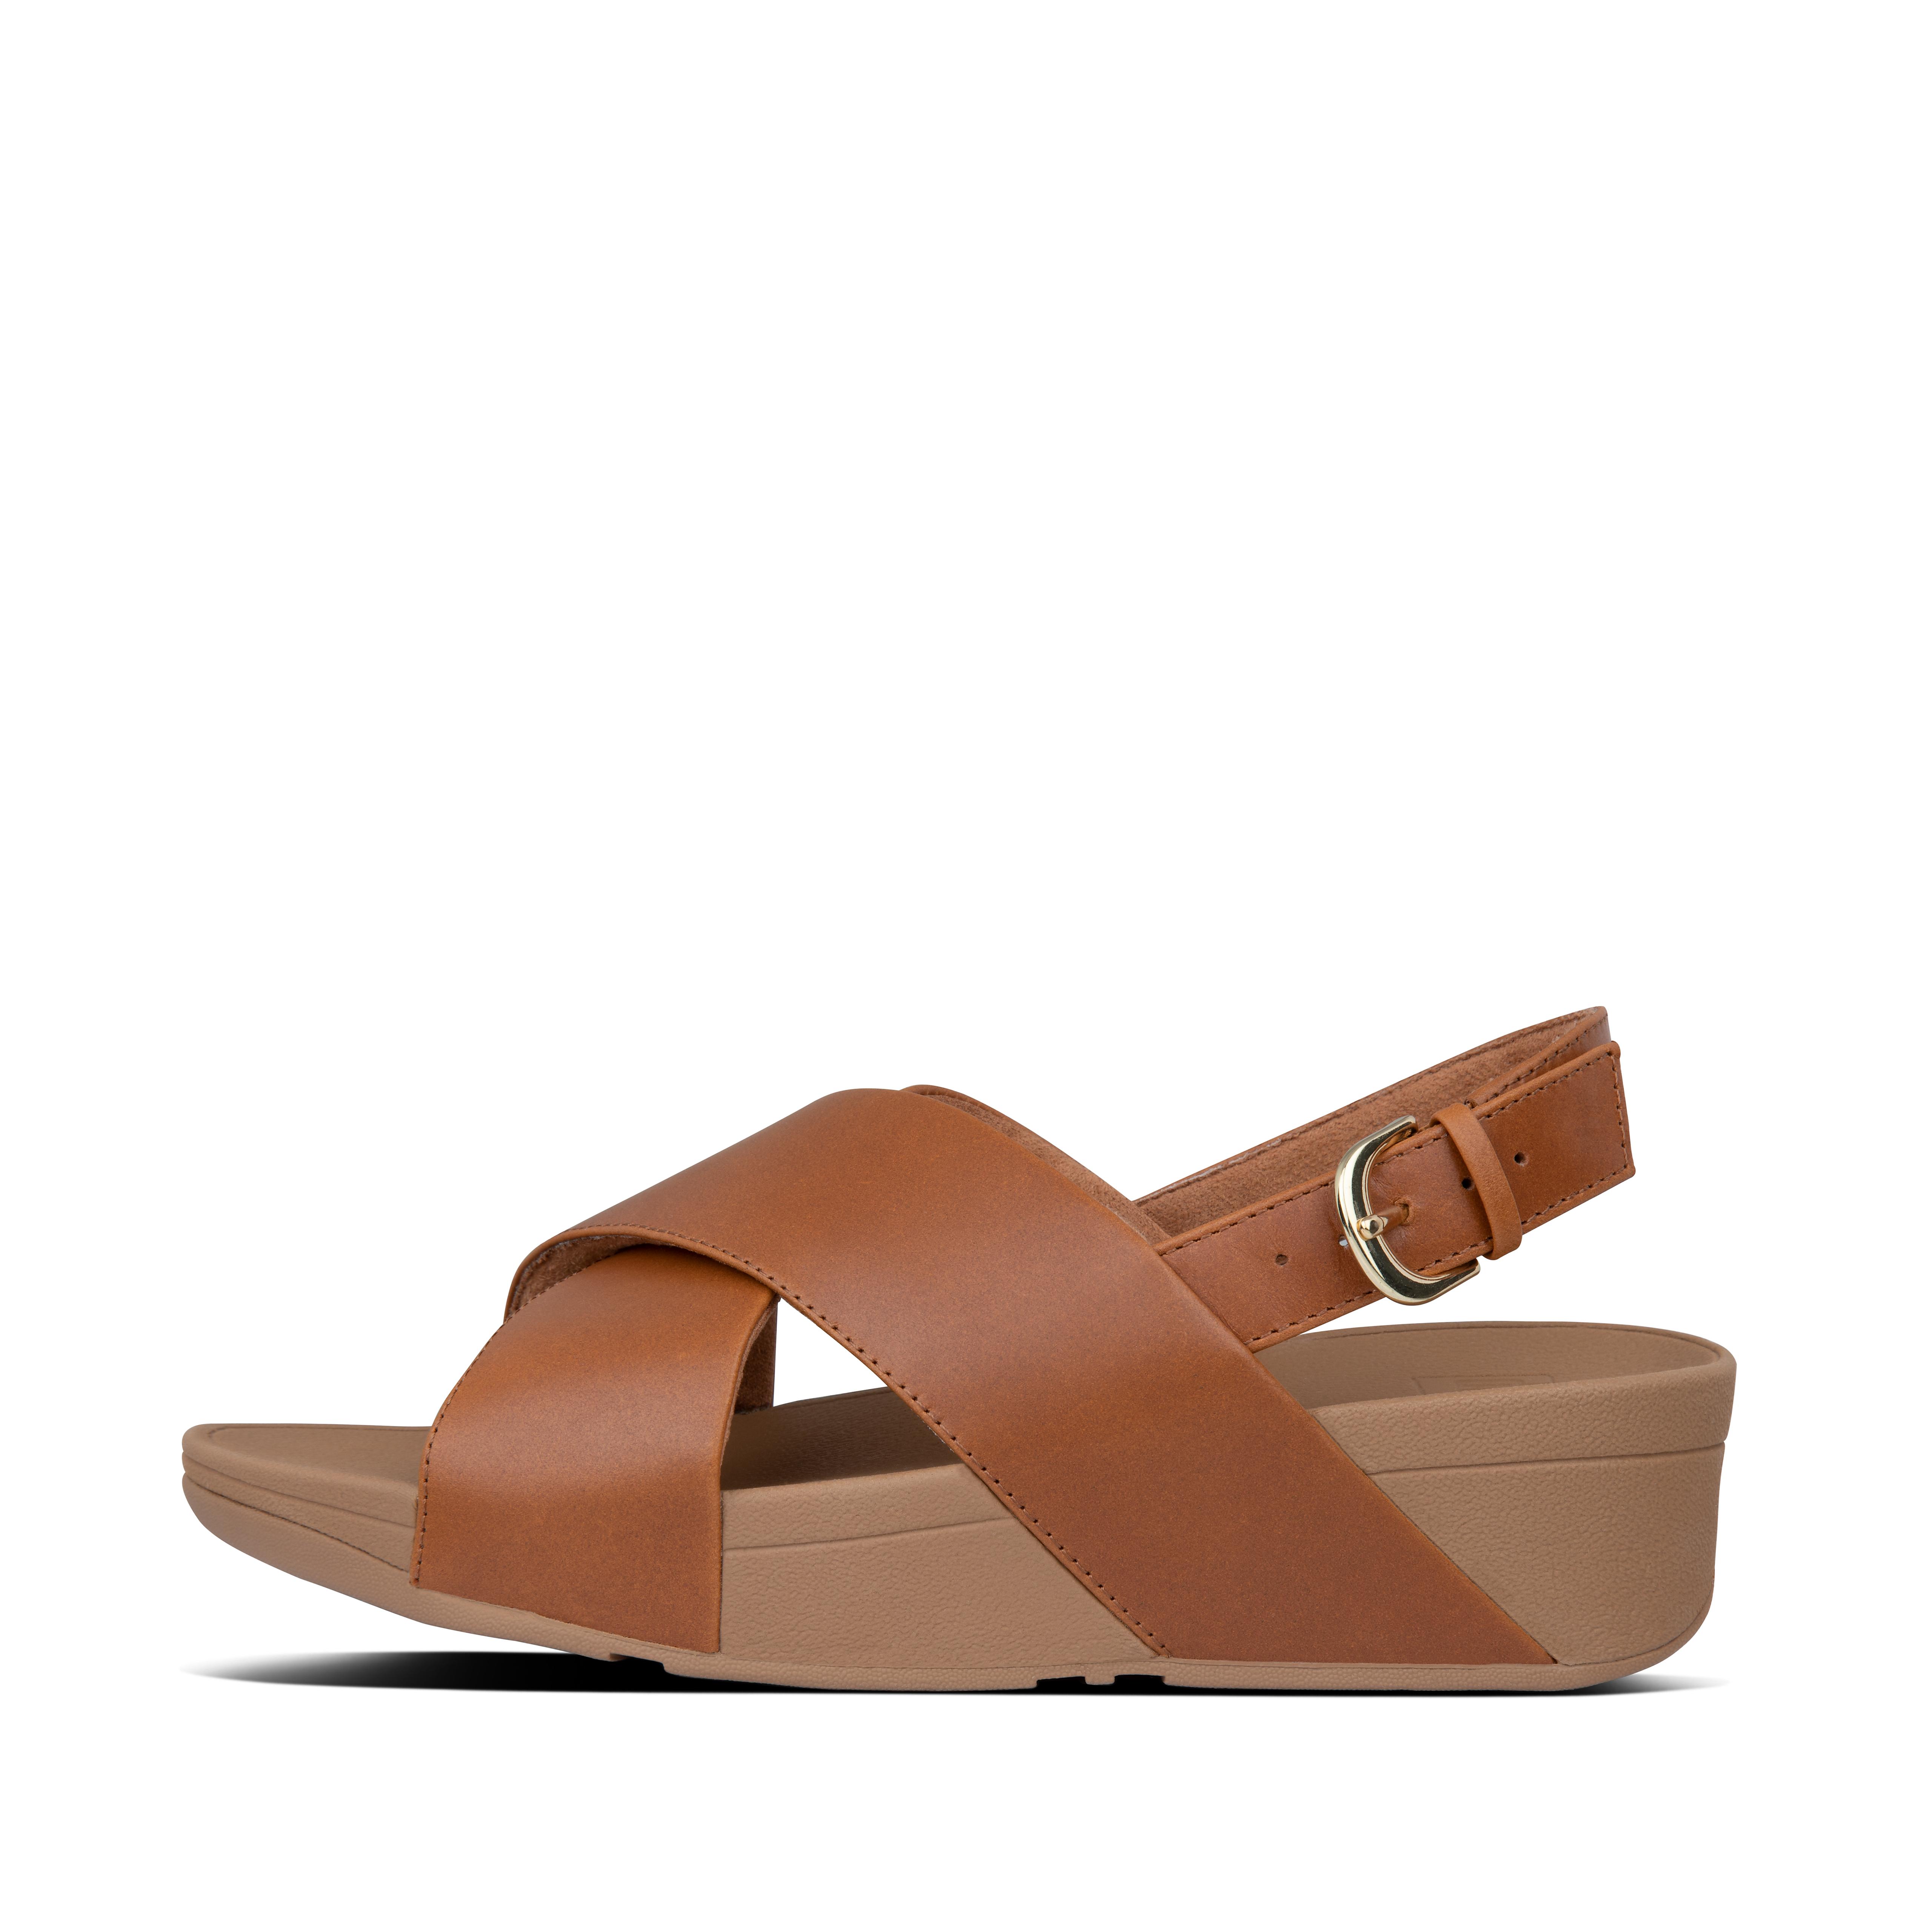 slide sandals with backstrap